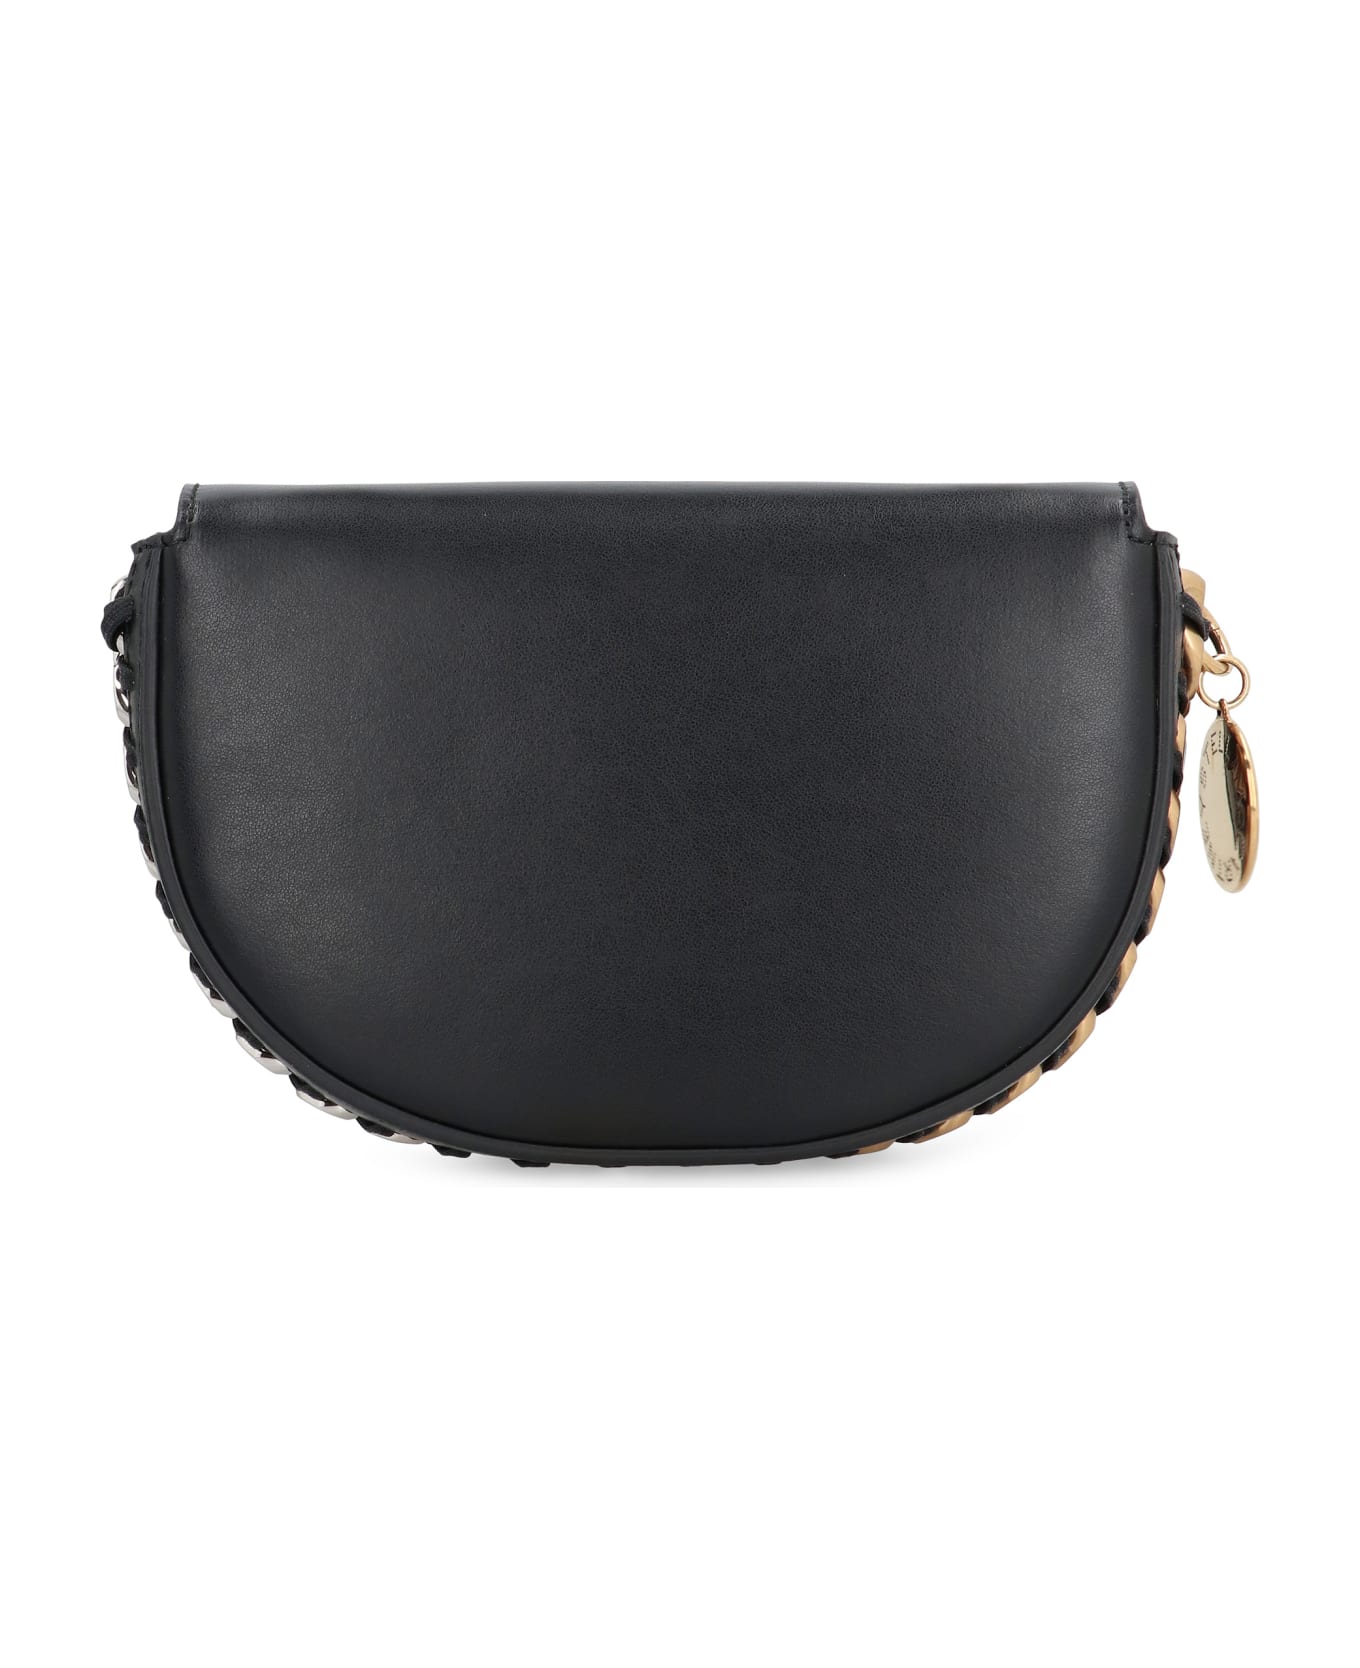 Stella McCartney Vegan Leather Shoulder Bag - black